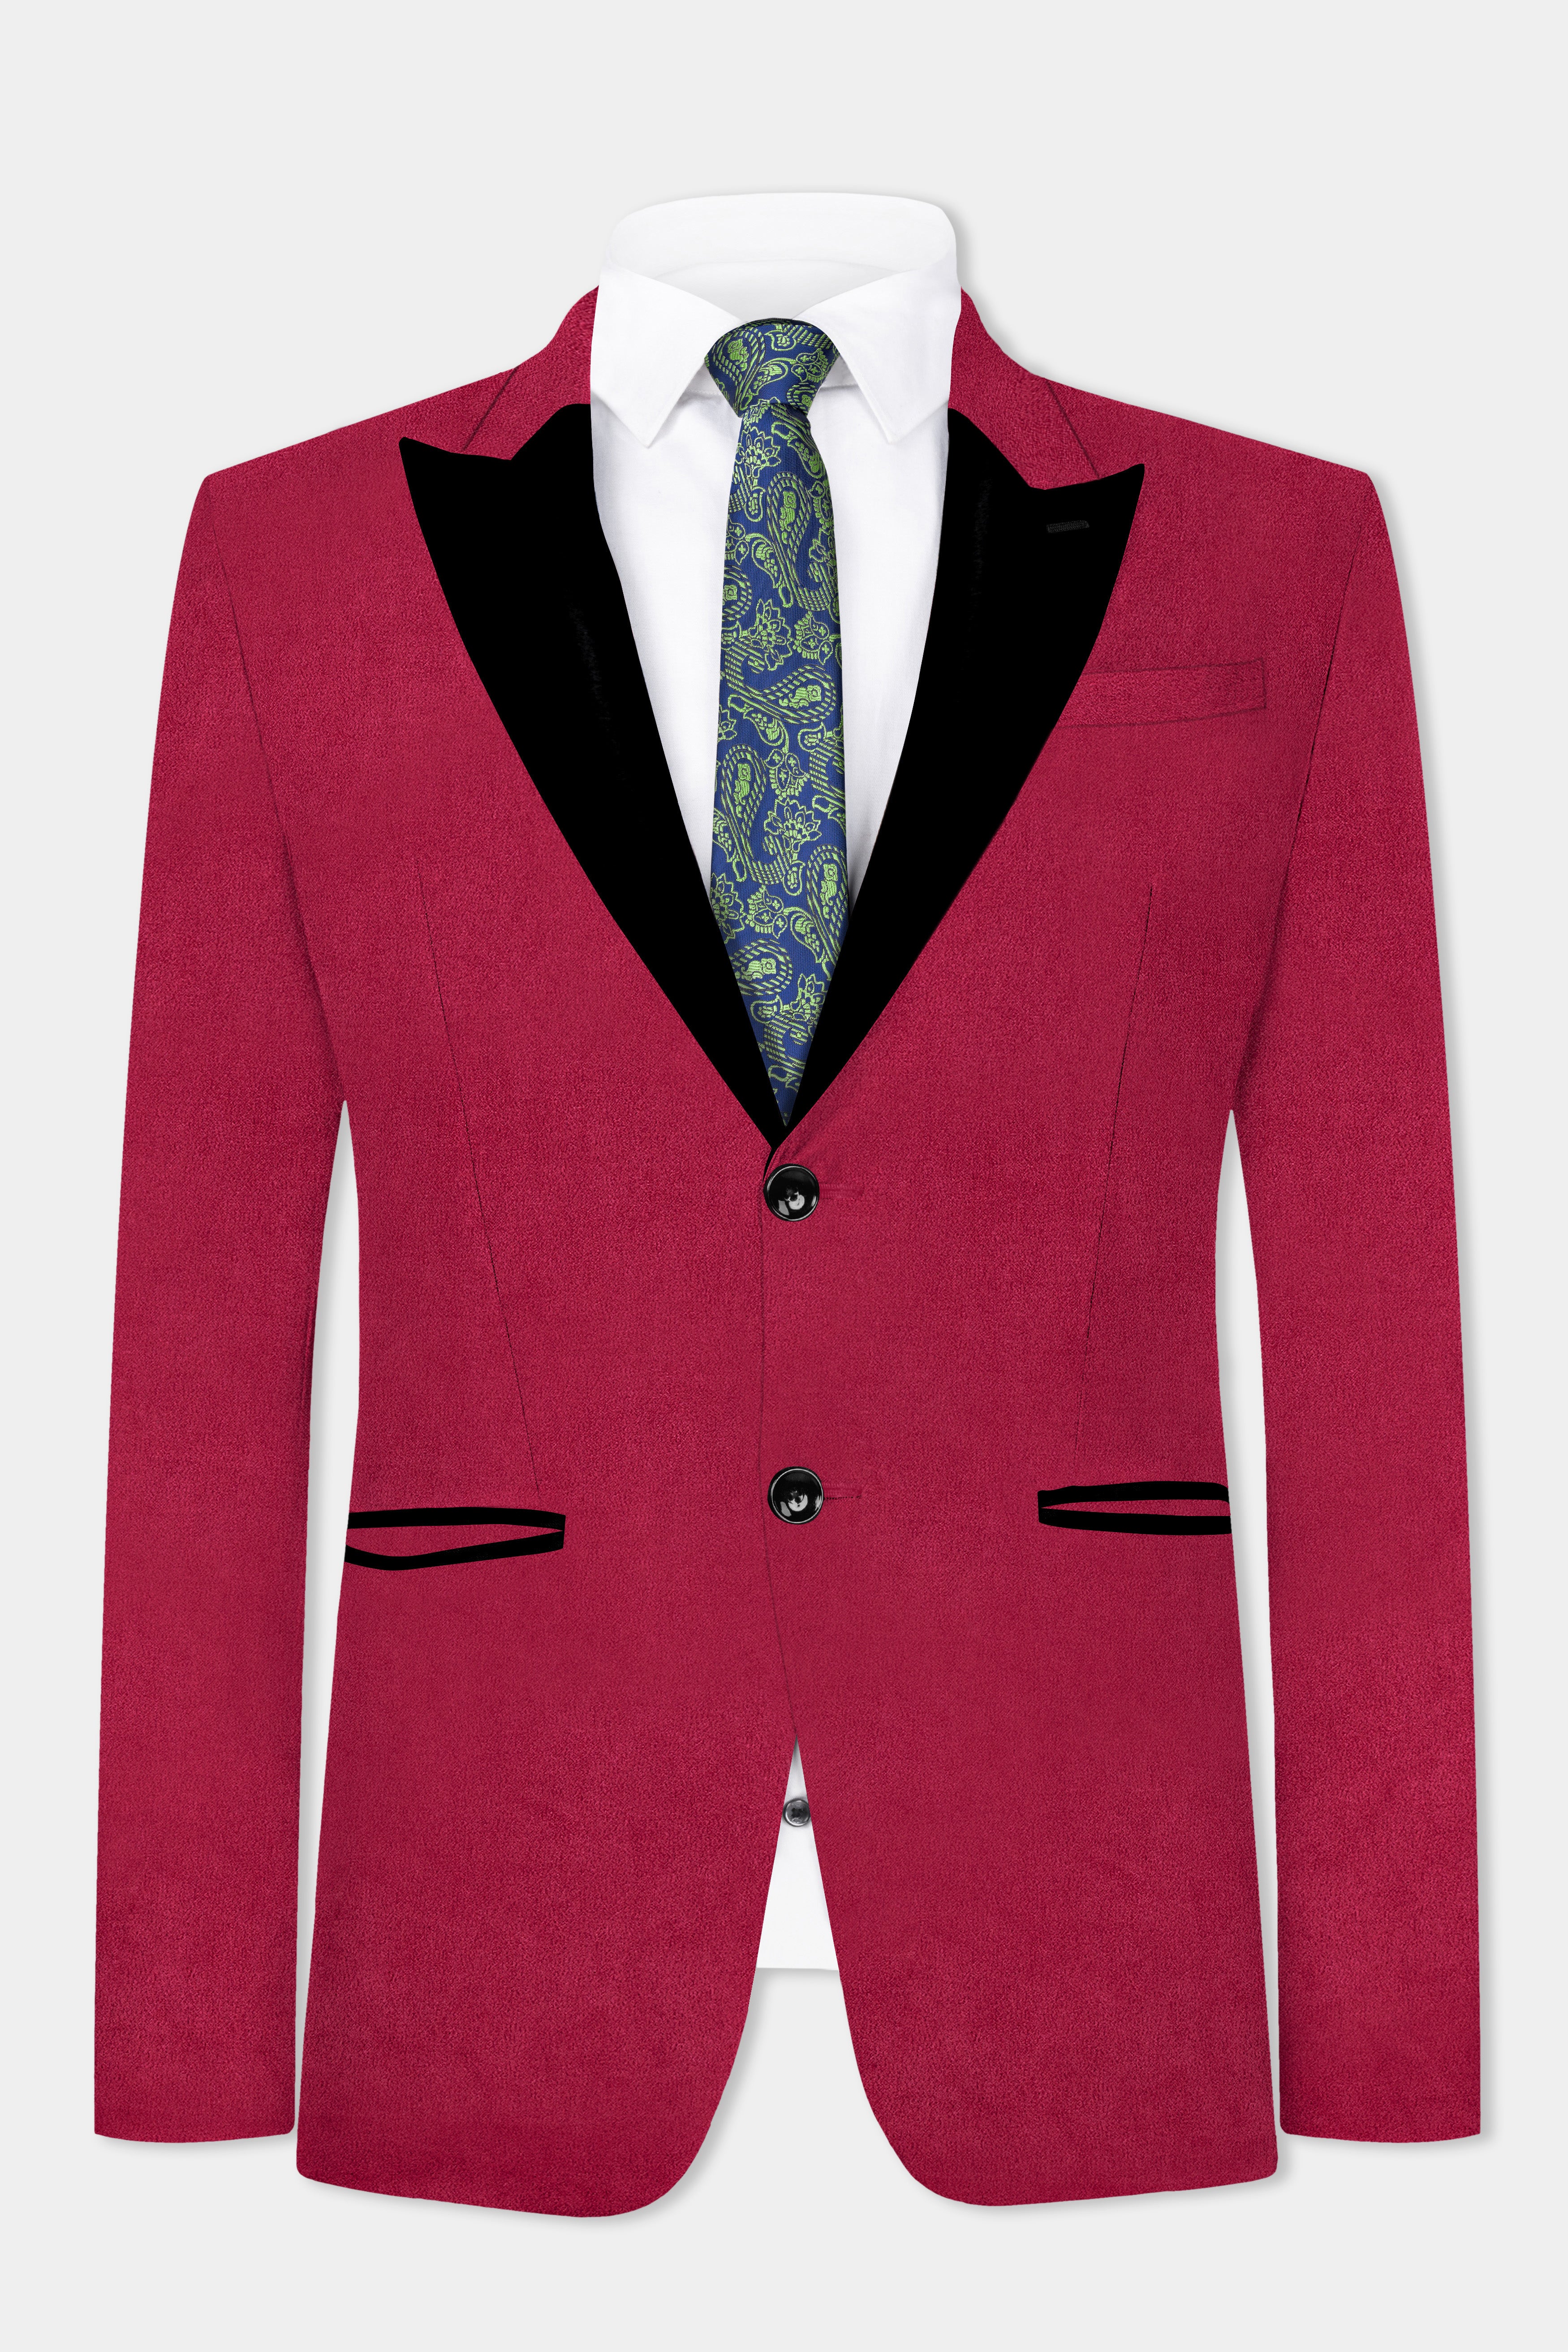 Claret Red Velvet Peak Collar Tuxedo Suit